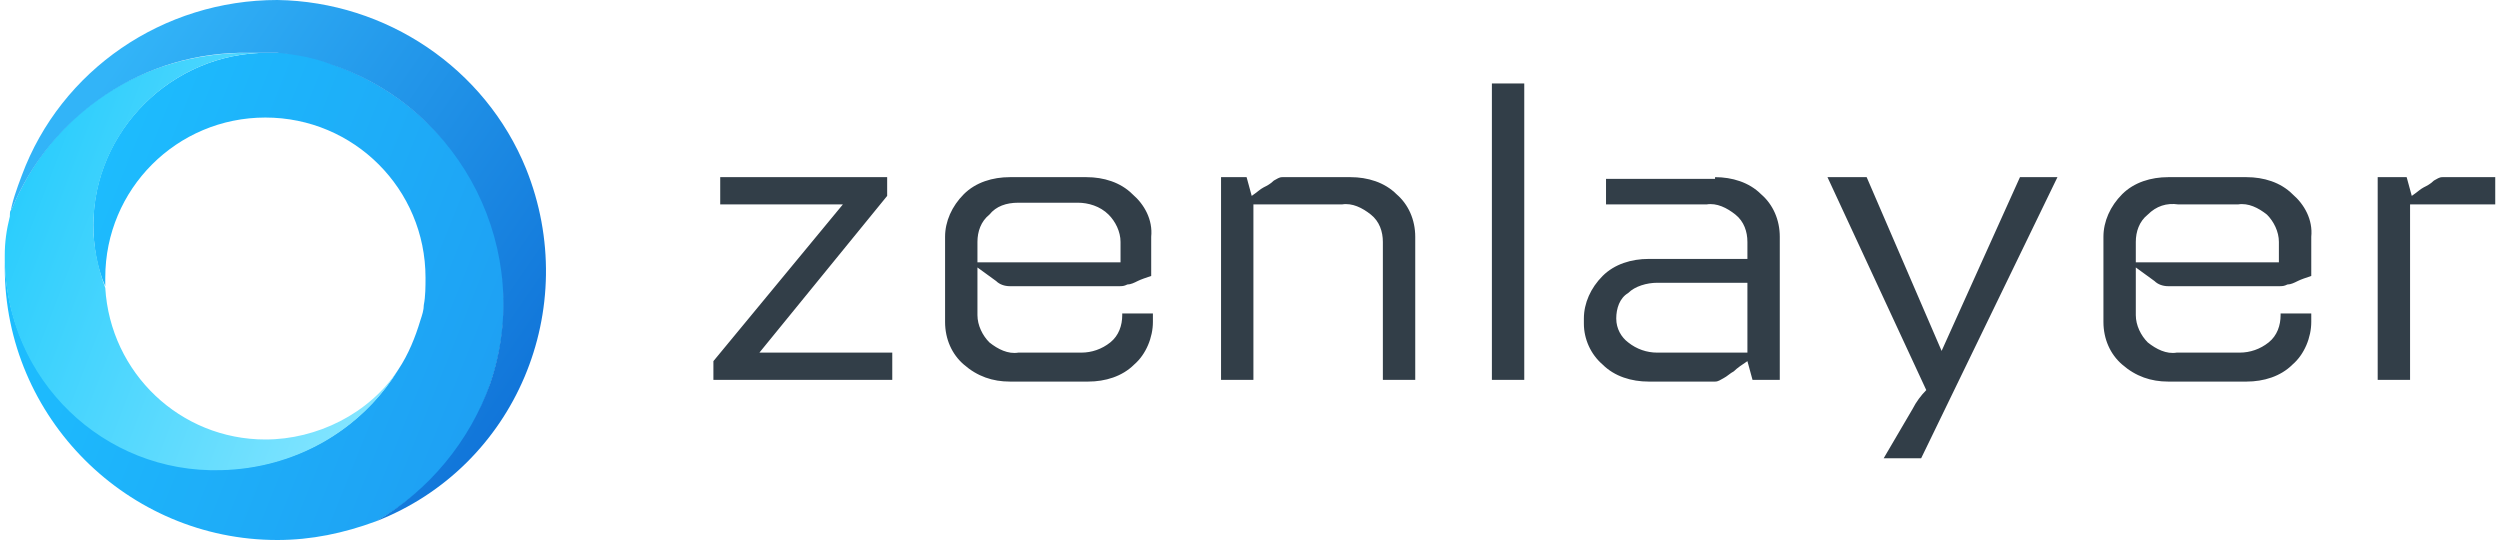 Zenlayer logo high res